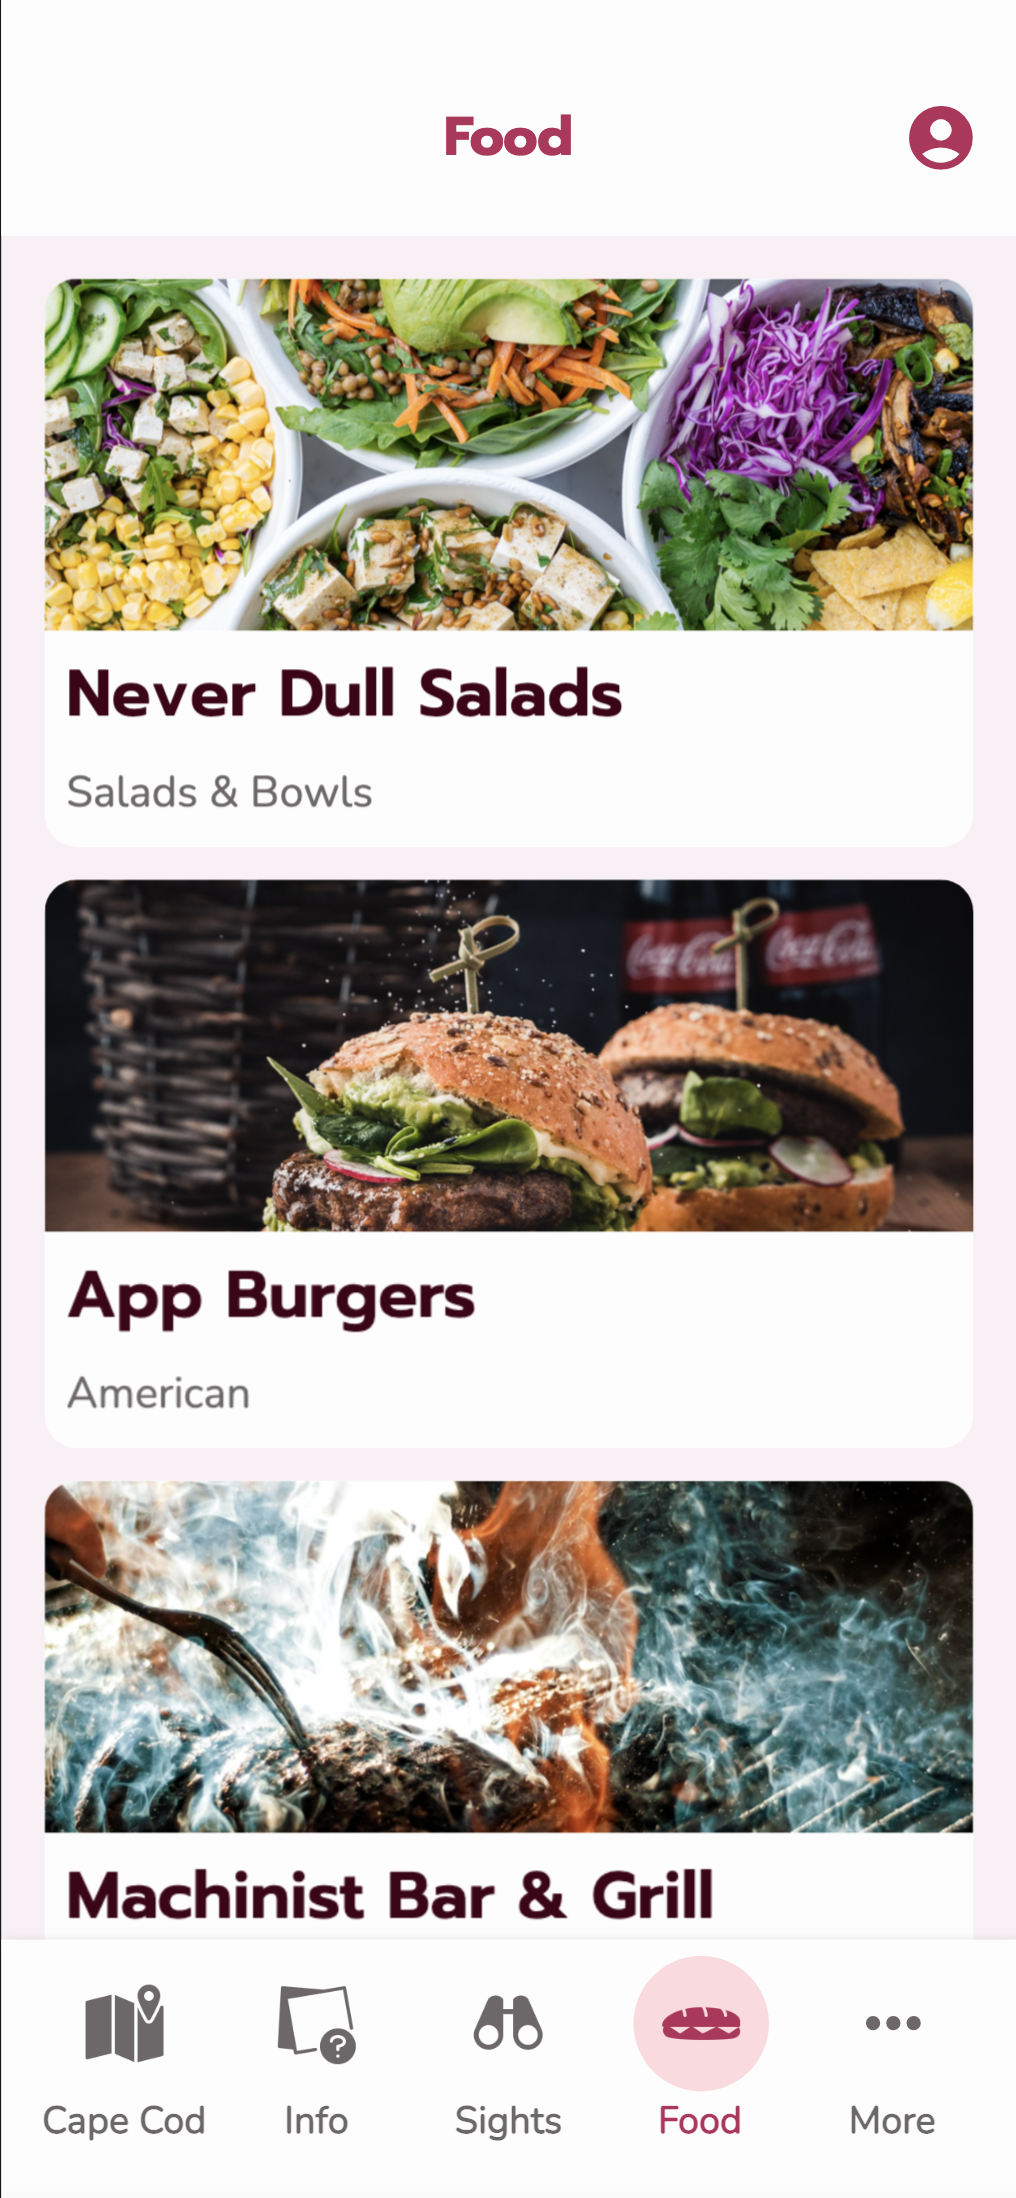 Tourism App - Food Menu